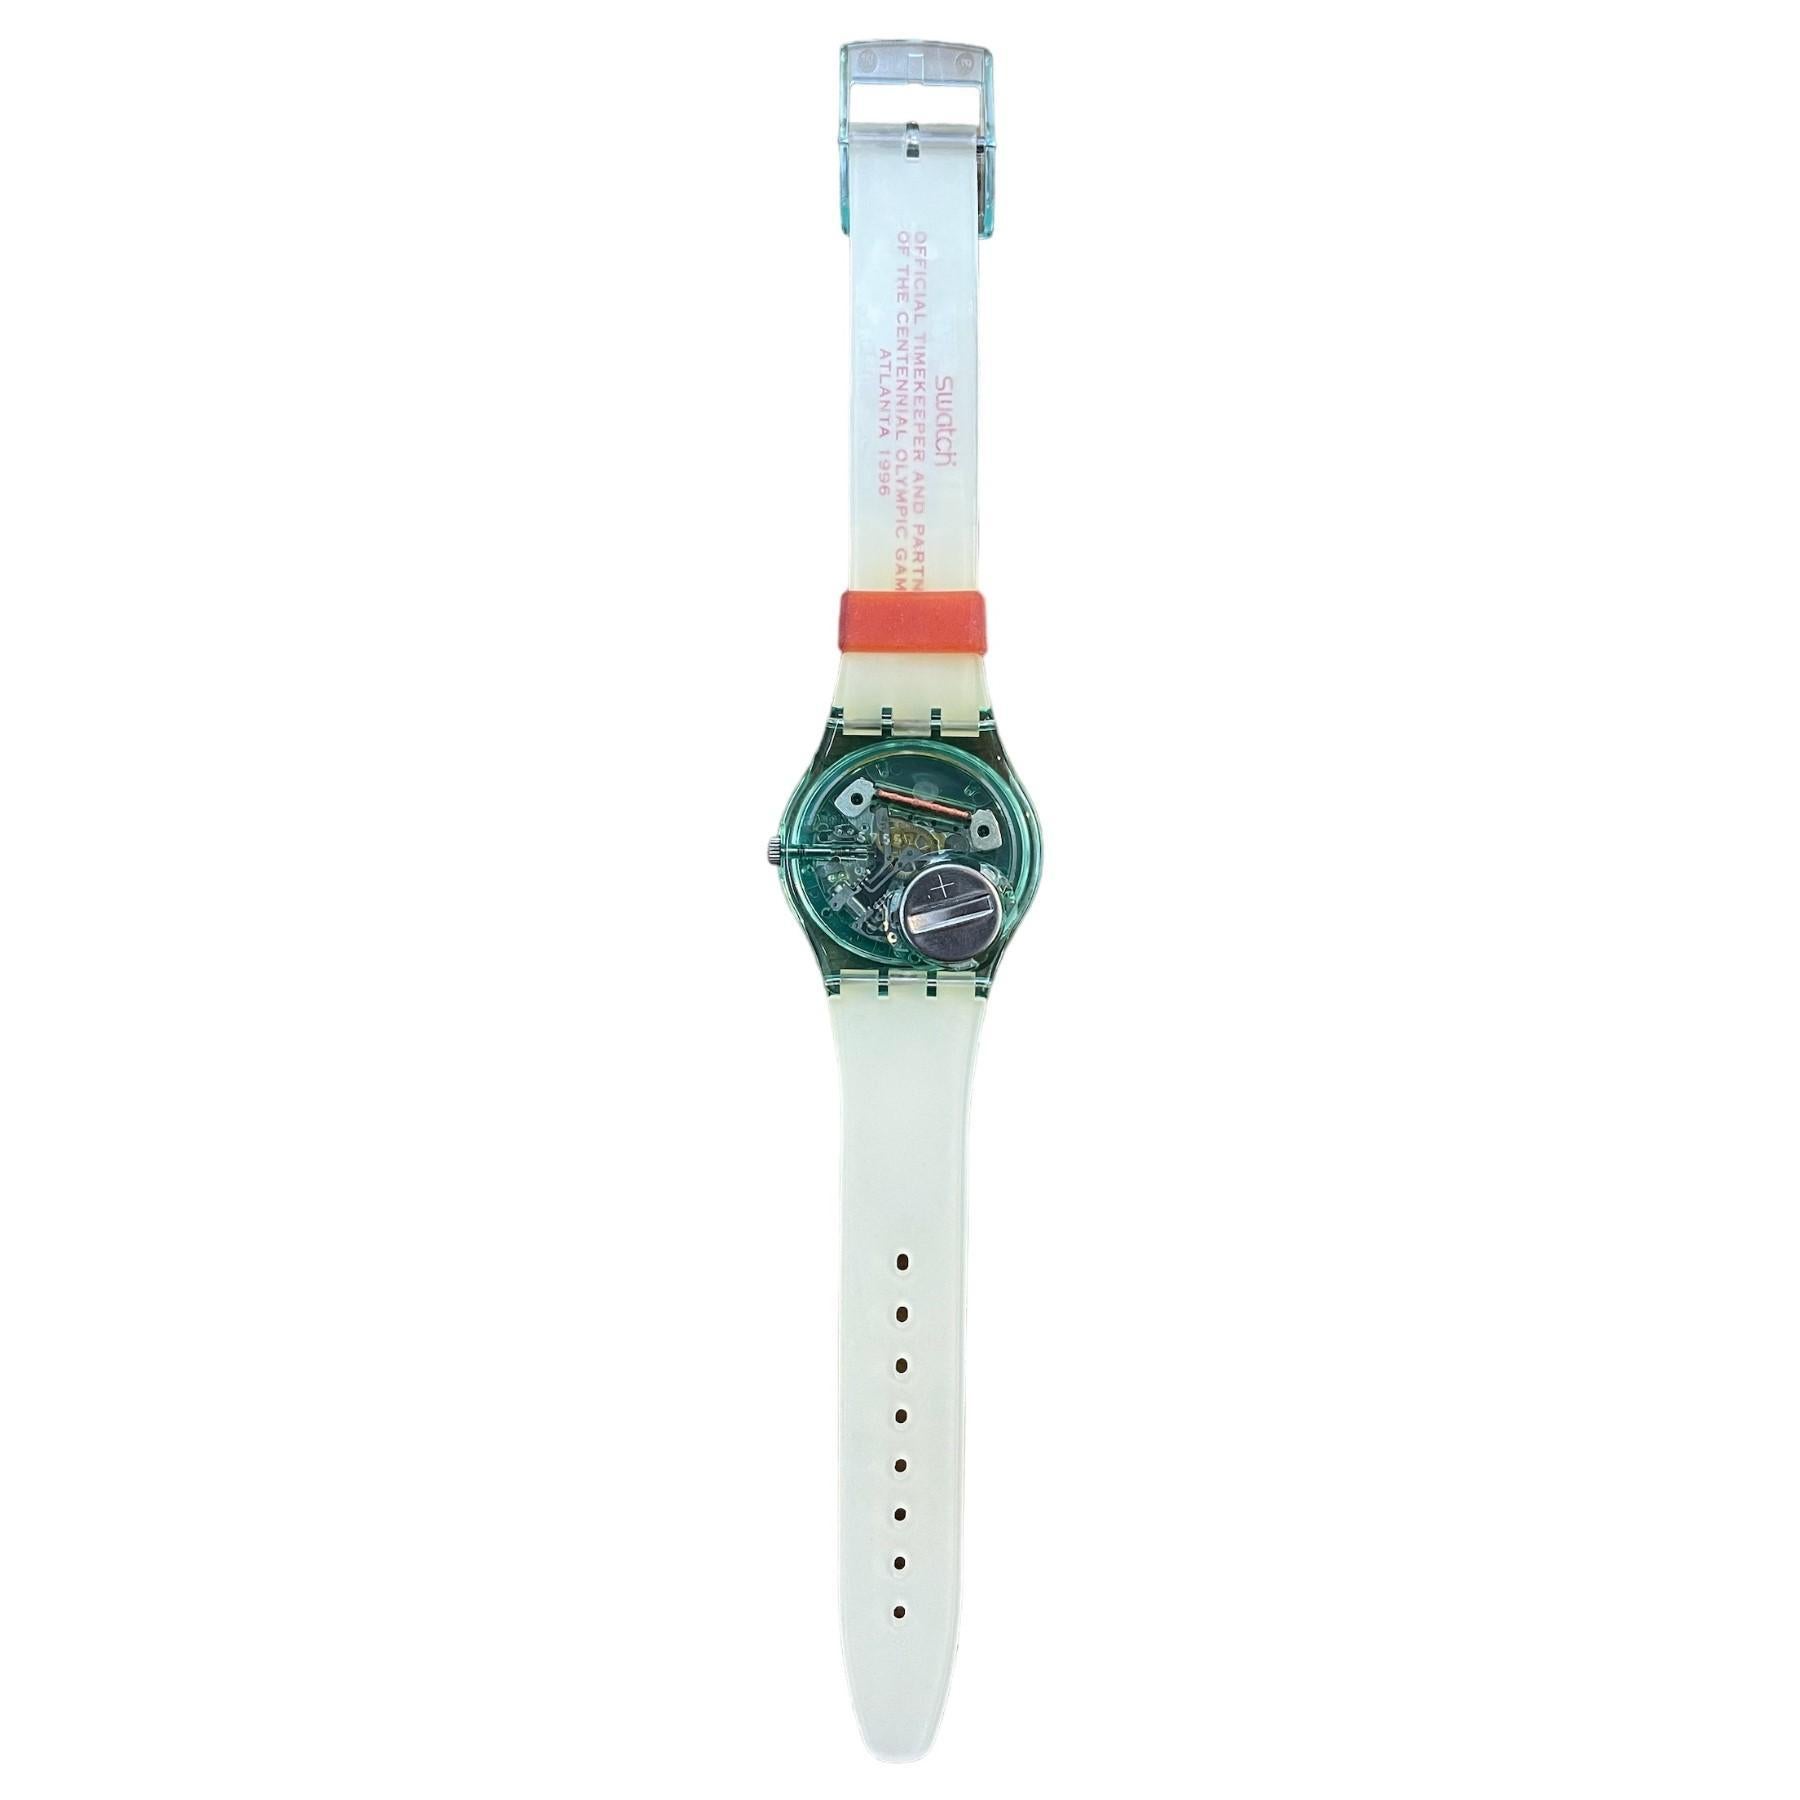 swatch atlanta 1996 olympic watch